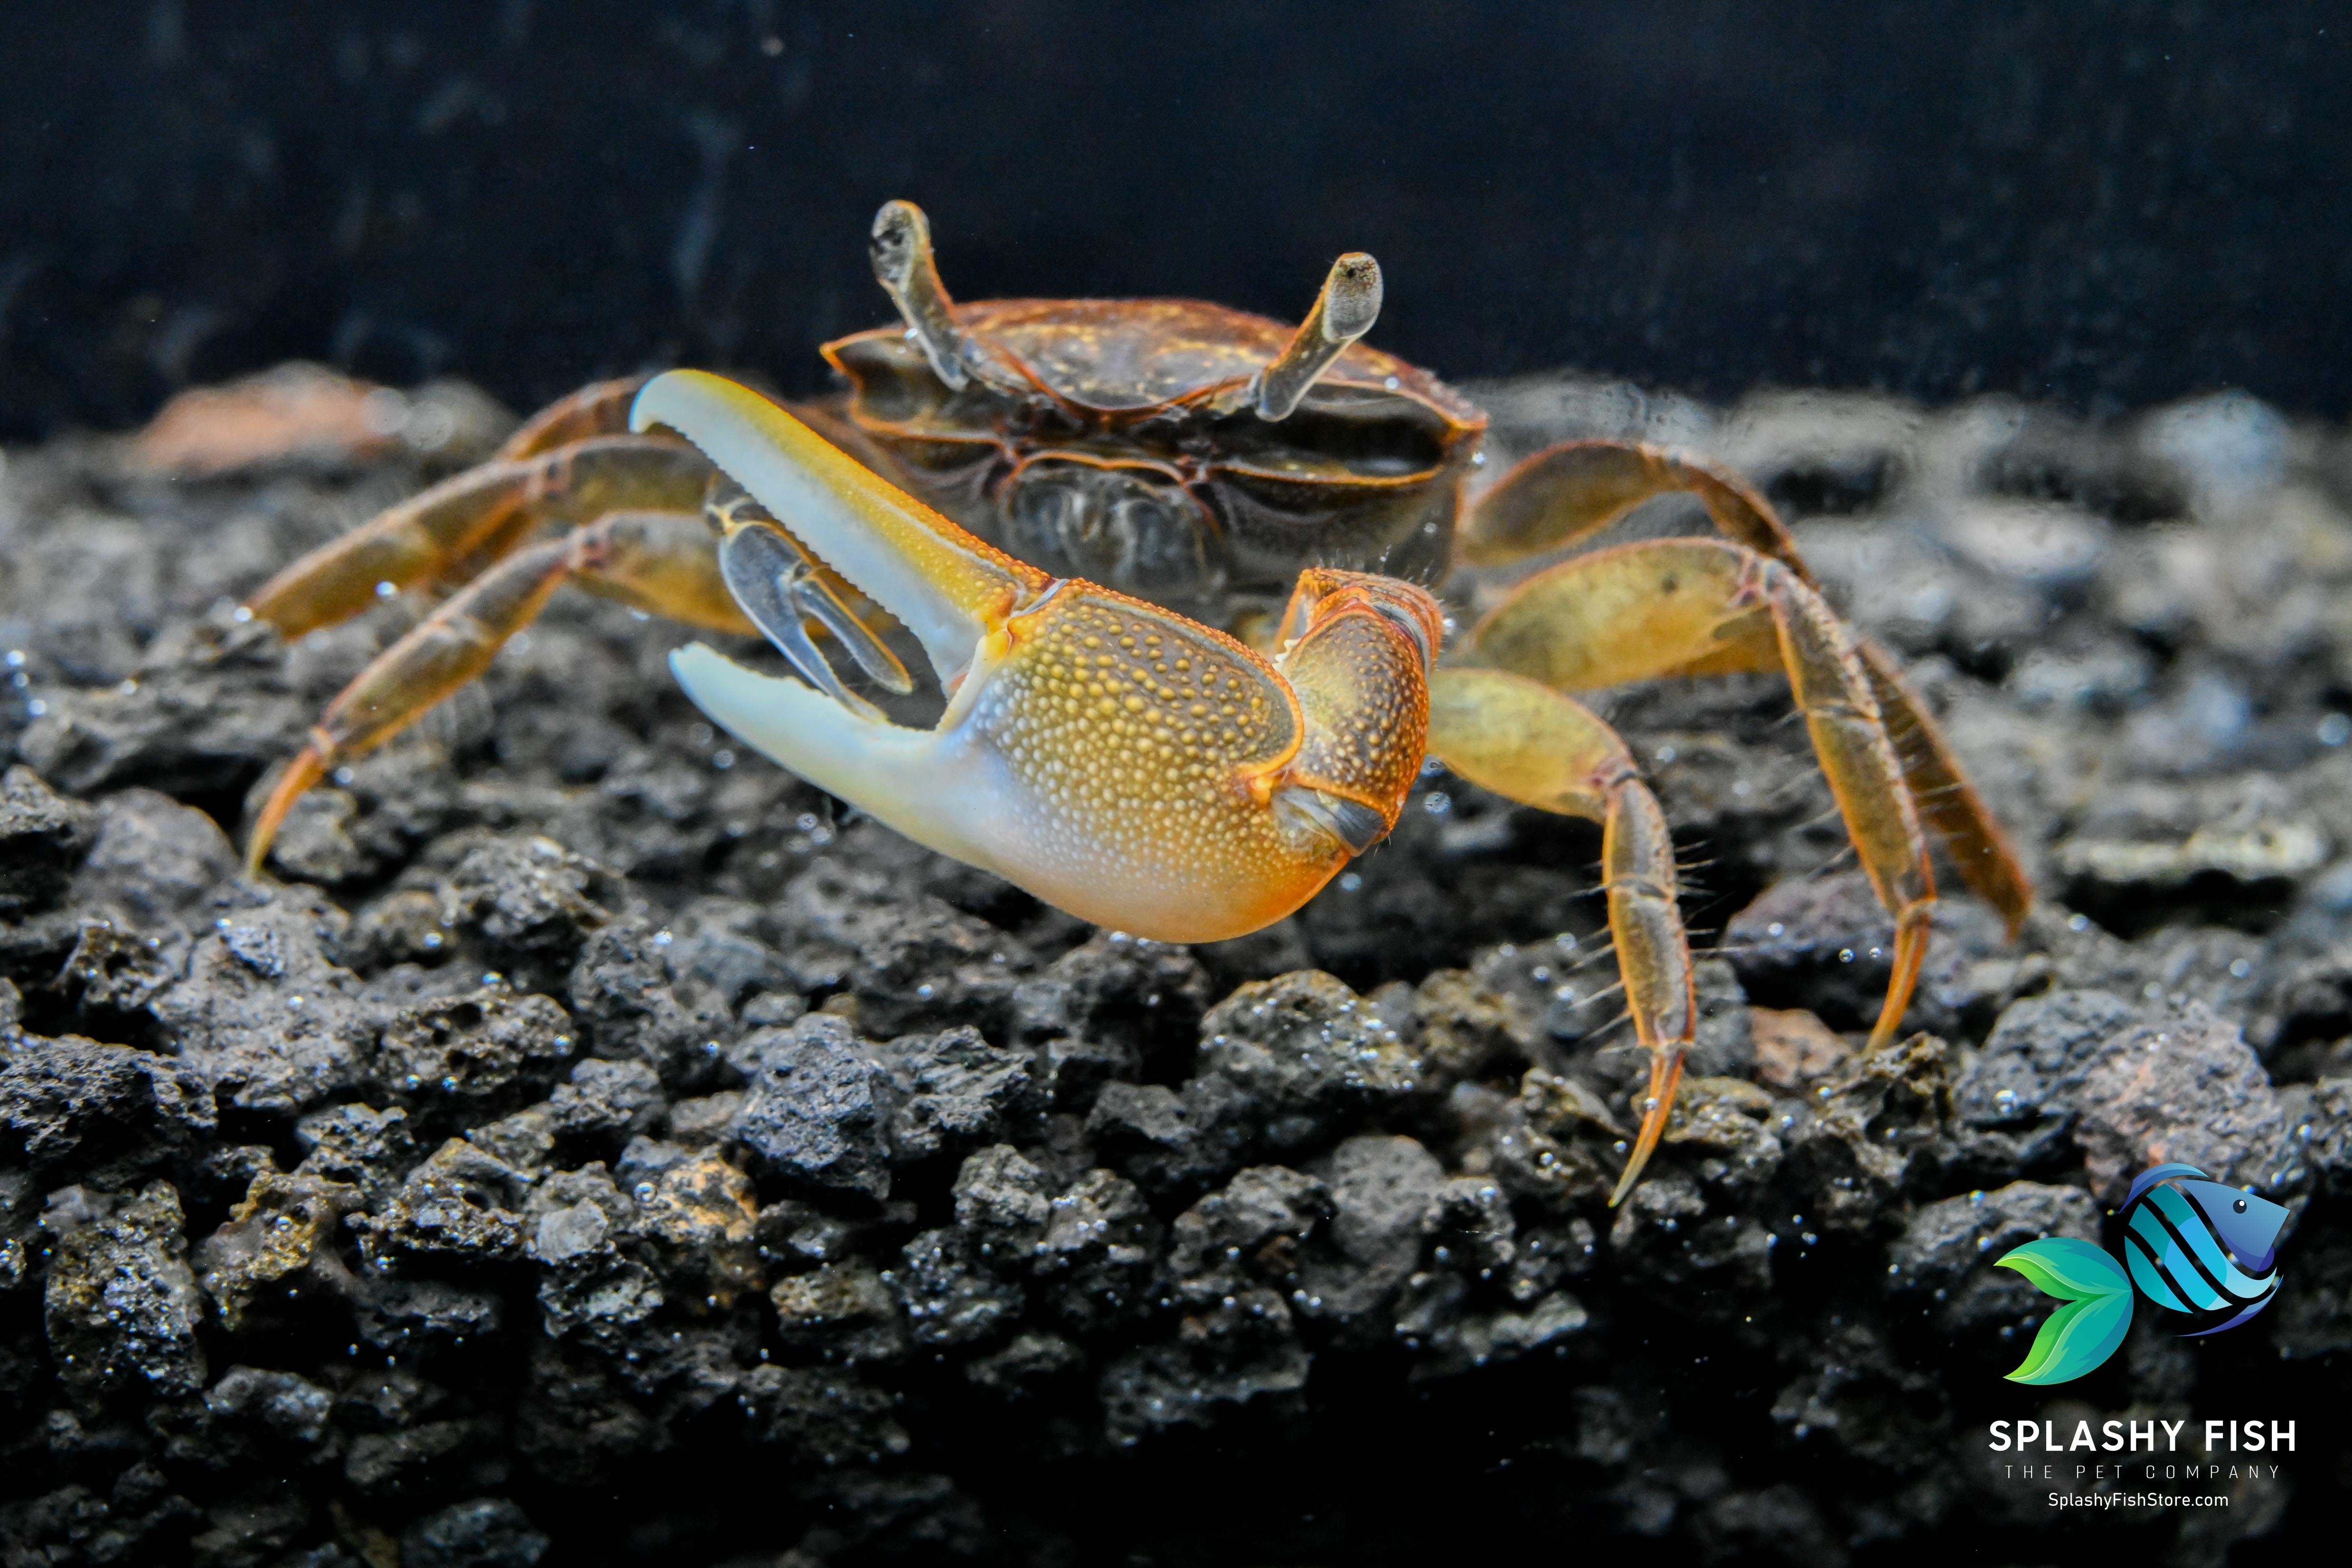 Live Aquarium Freshwater Crab For Sale | Live Tropical Aquarium Fish Store | Splashy Fish